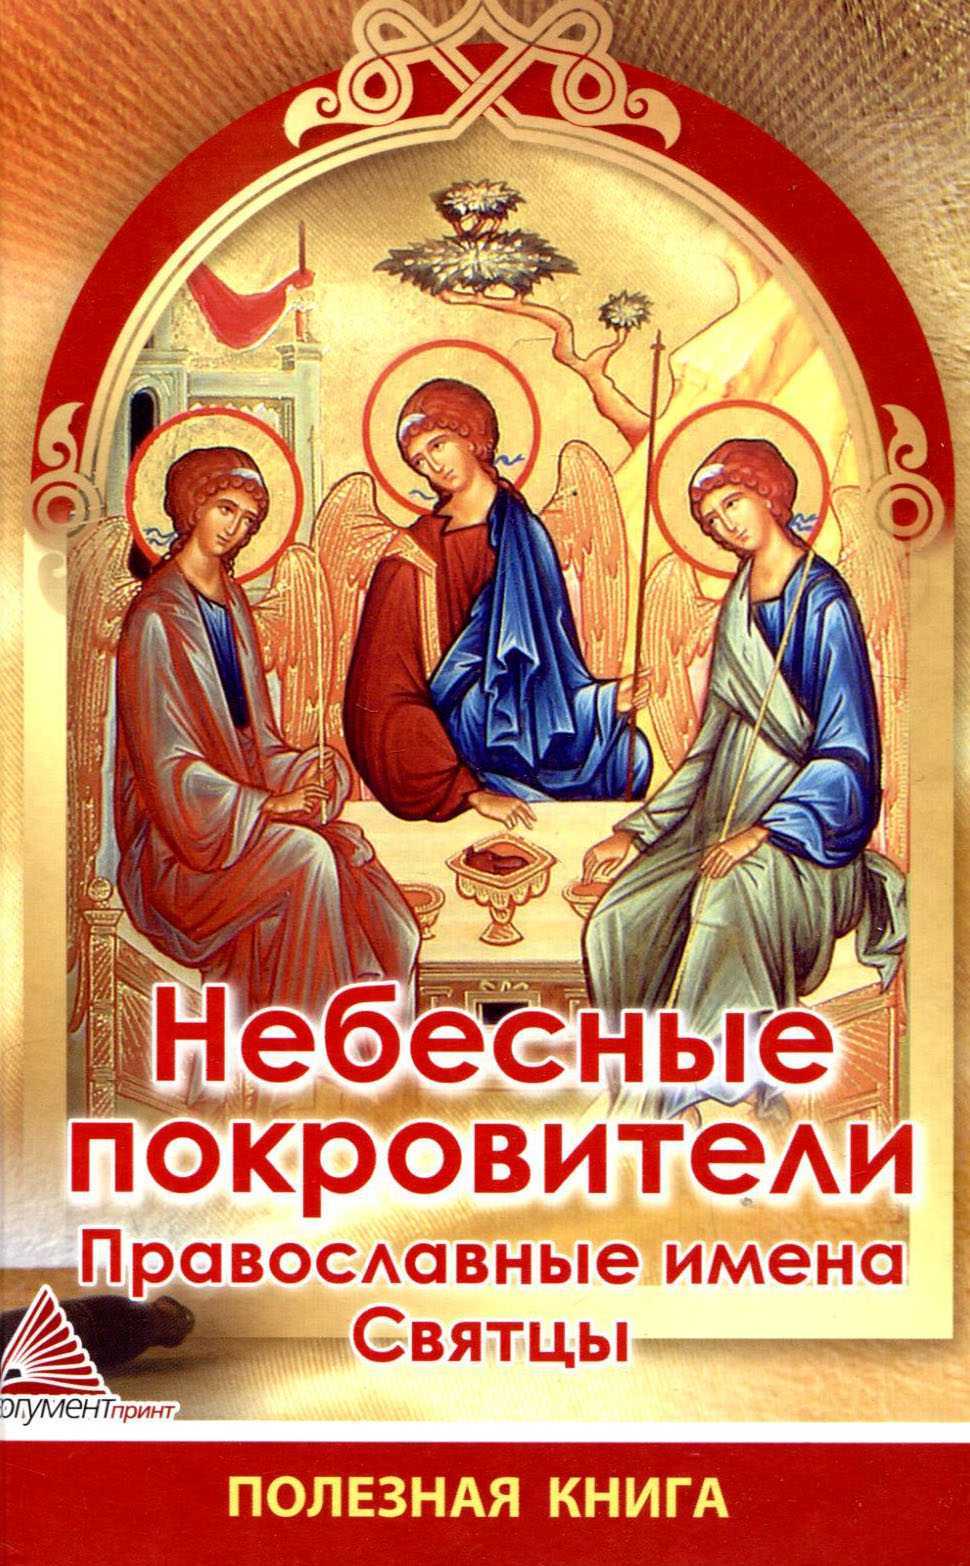 Именины анны (день ангела анны) по православному календарю